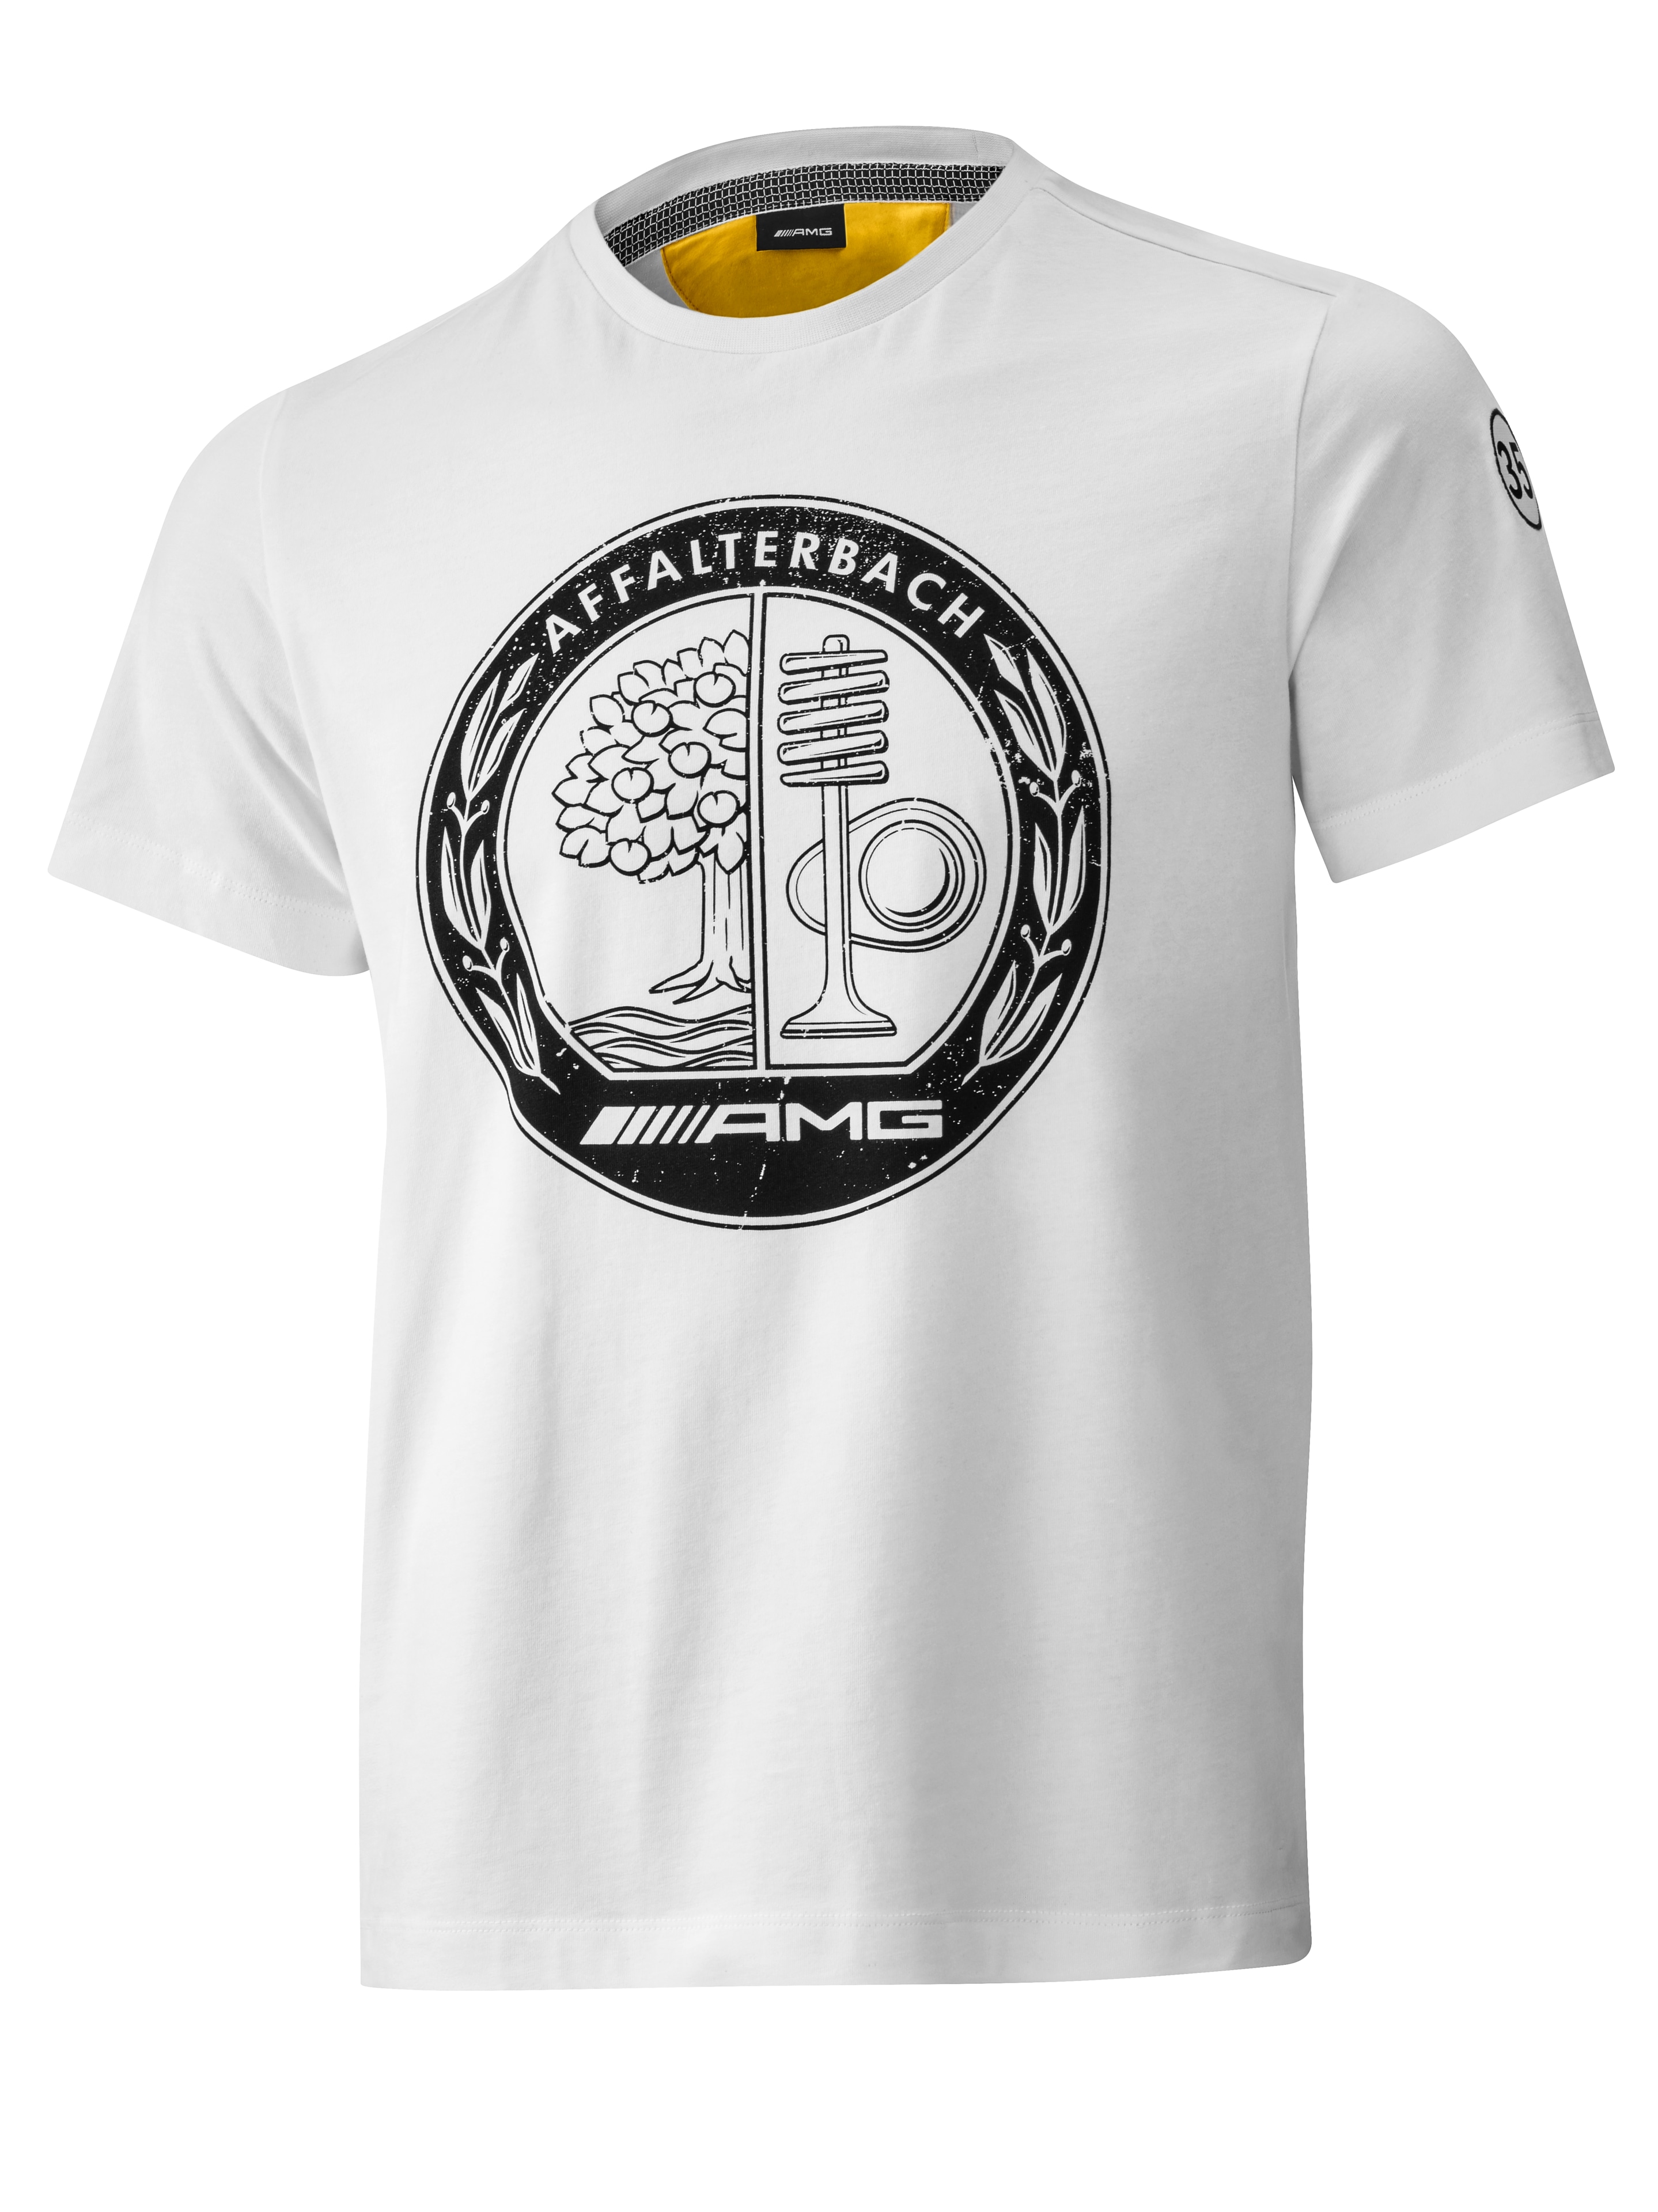 AMG T-Shirt Herren - weiß / gelb, XXXL